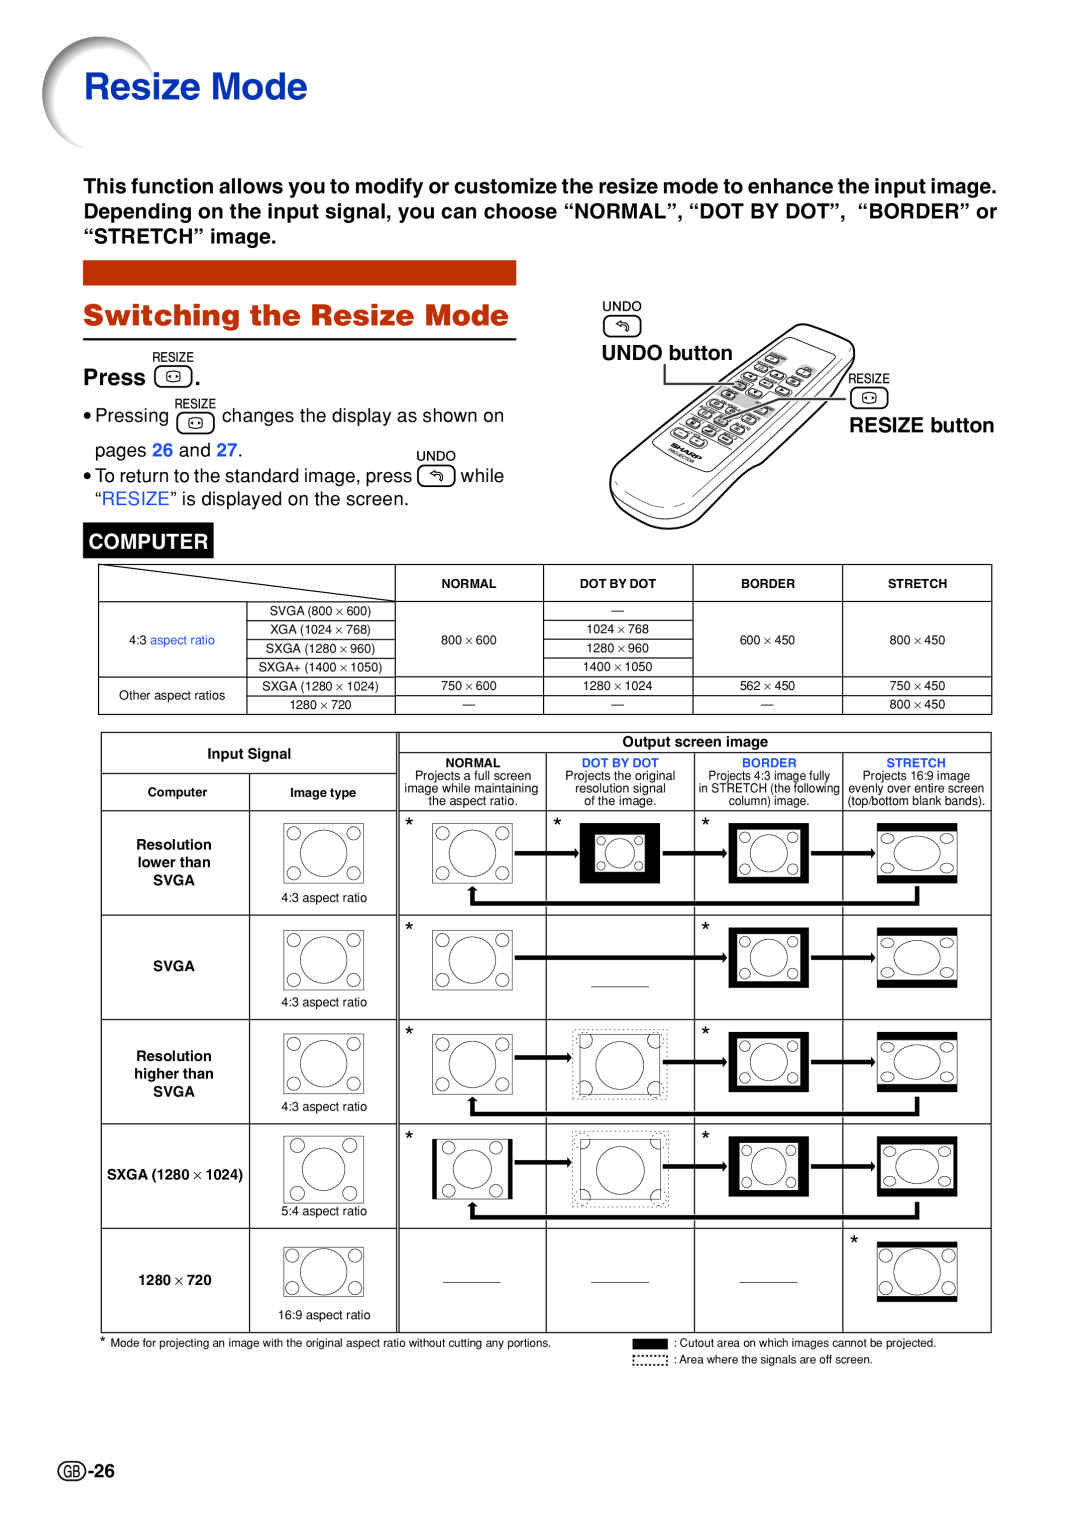 Sharp PG-B10S Switching the Resize Mode, Press, UNDO button, RESIZE button, Computer, Input Signal, Svga, SXGA 1280 ⋅ 